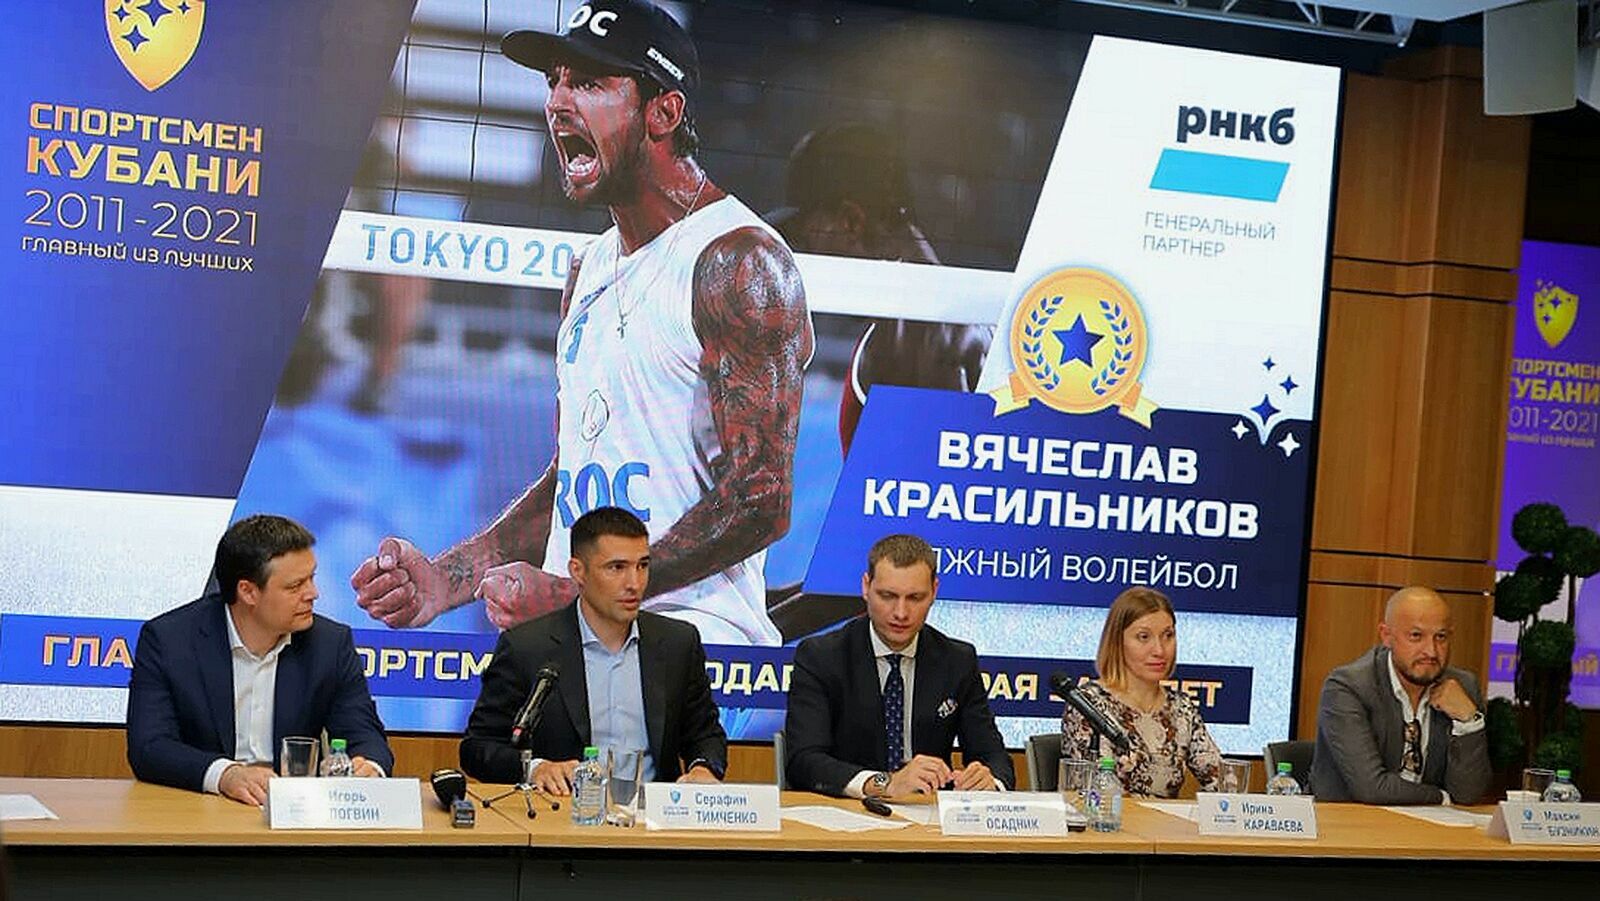 Старт проекта «Спортсмен Кубани 2011-2021: Главный из лучших»